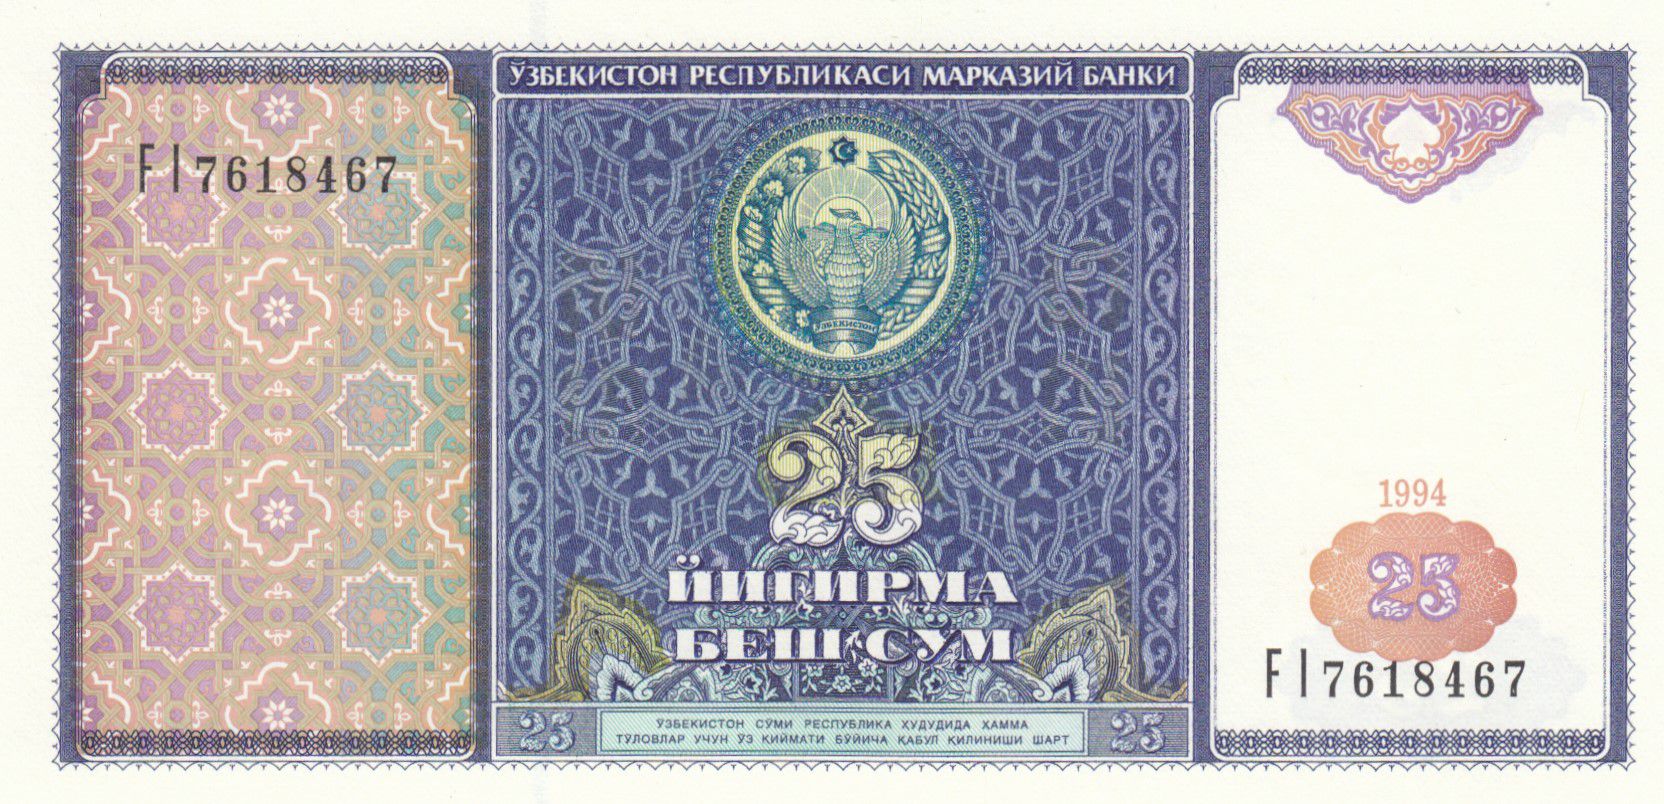 Uzbekistan 25 Sum 1994 P 77 UNC 